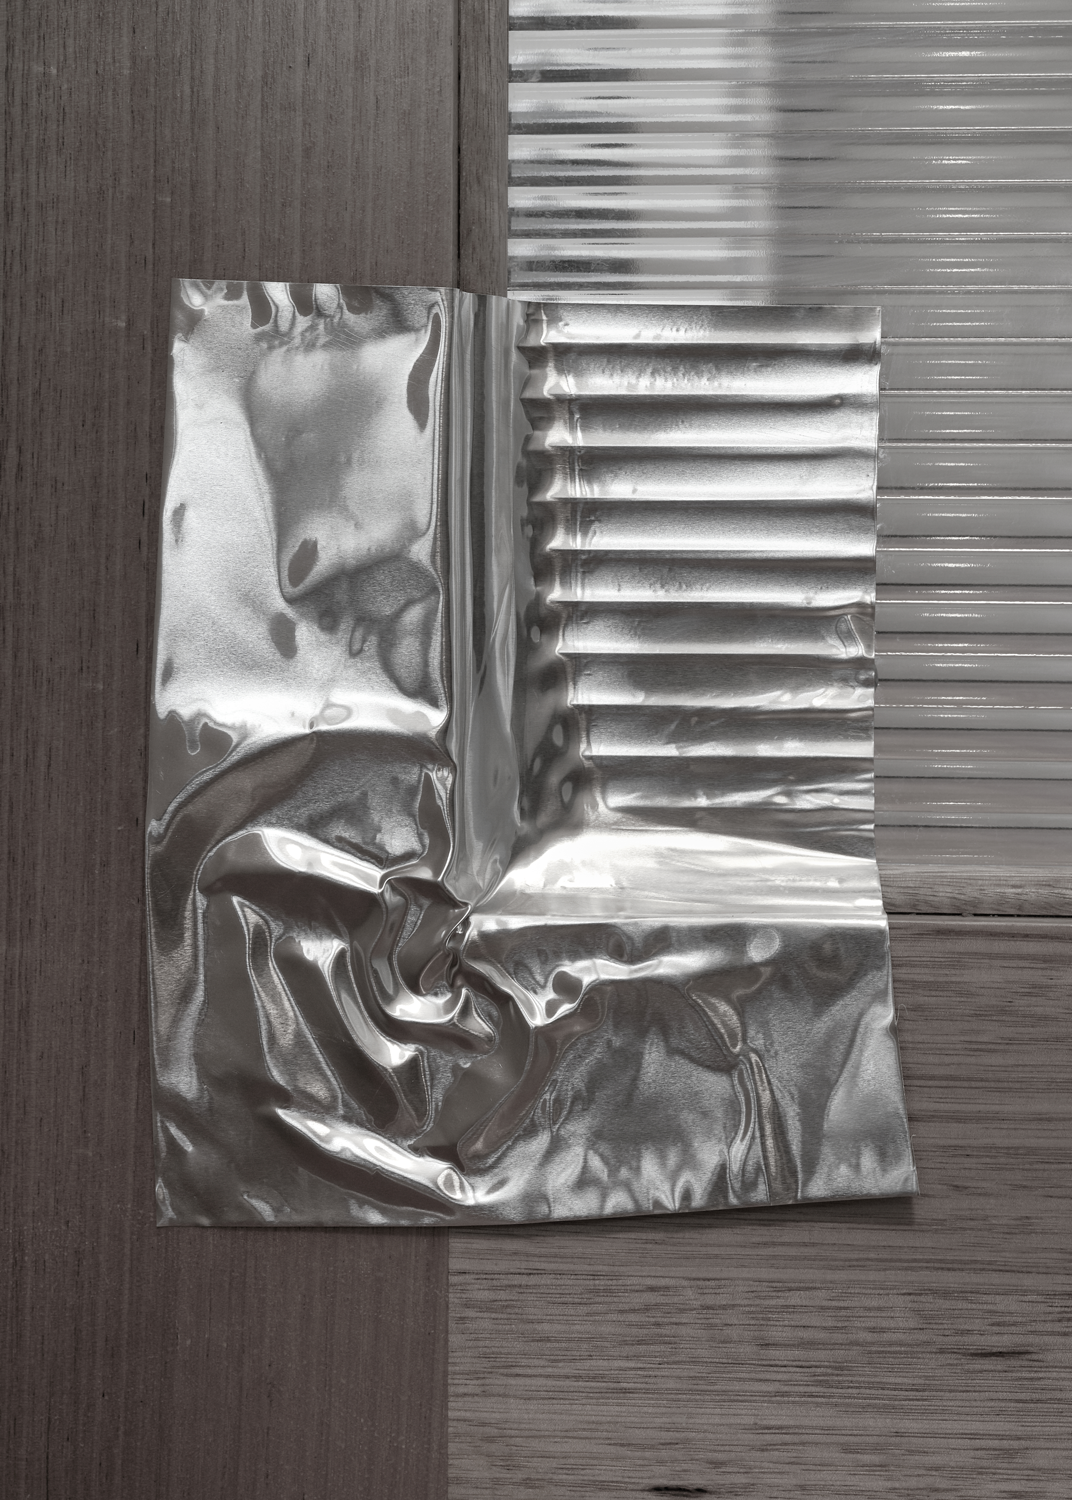 Aluminium pressed into the detail of glass door